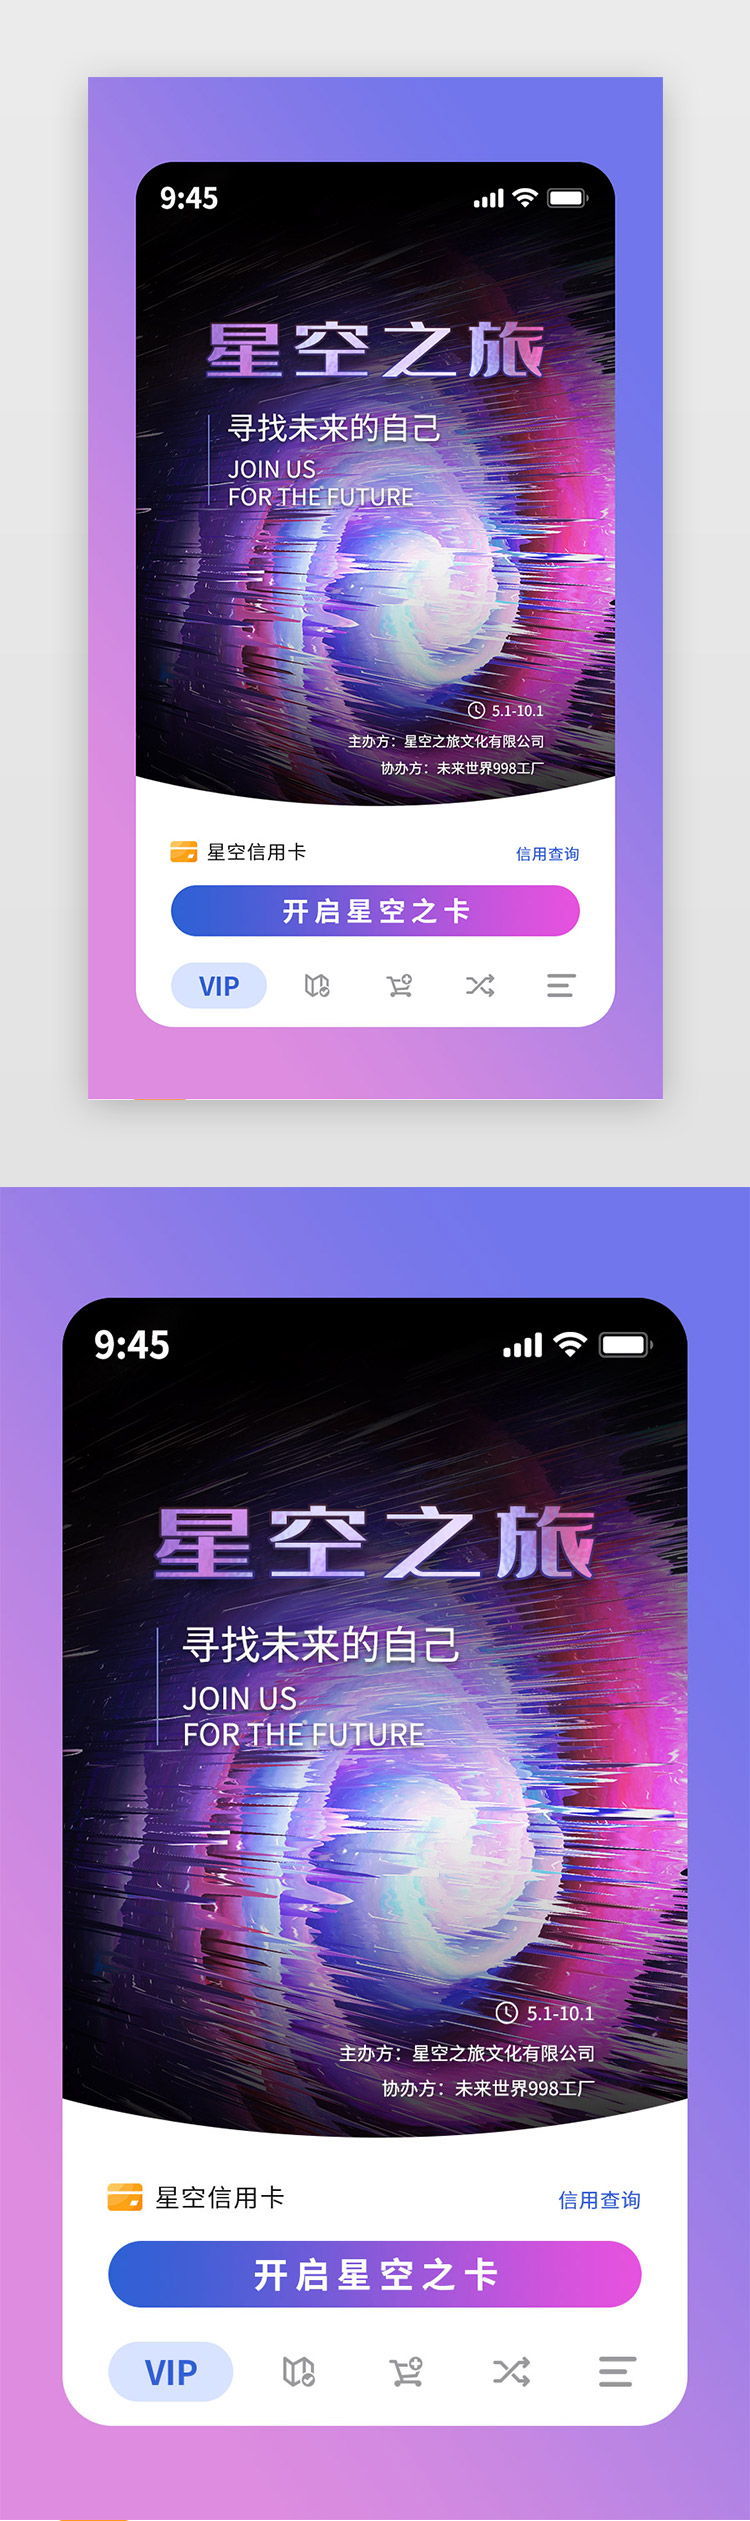 活动专题app主界面映射三维粉紫星空图片